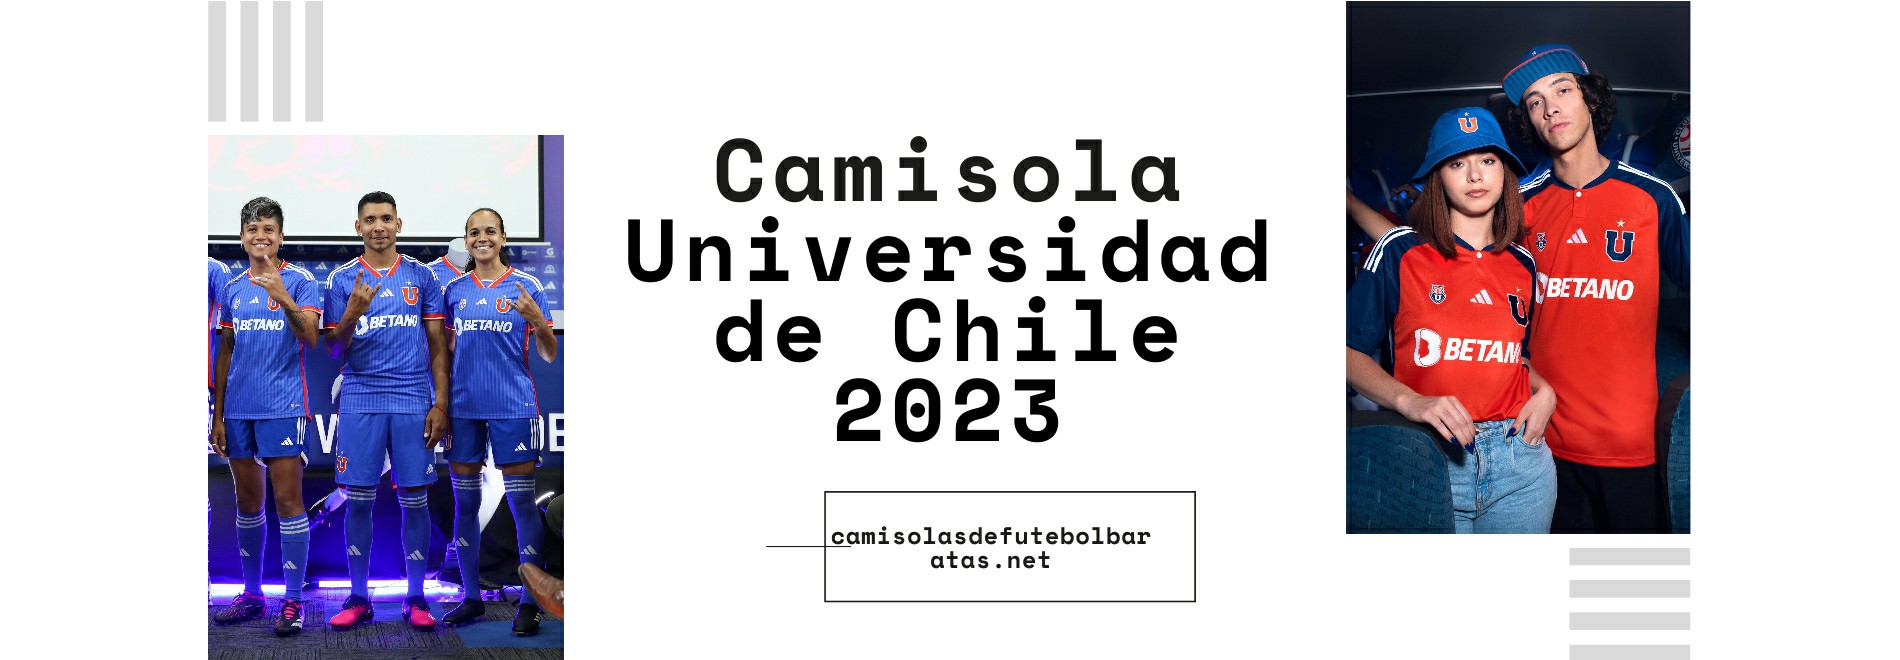 Camisola Universidad de Chile 2023-2024